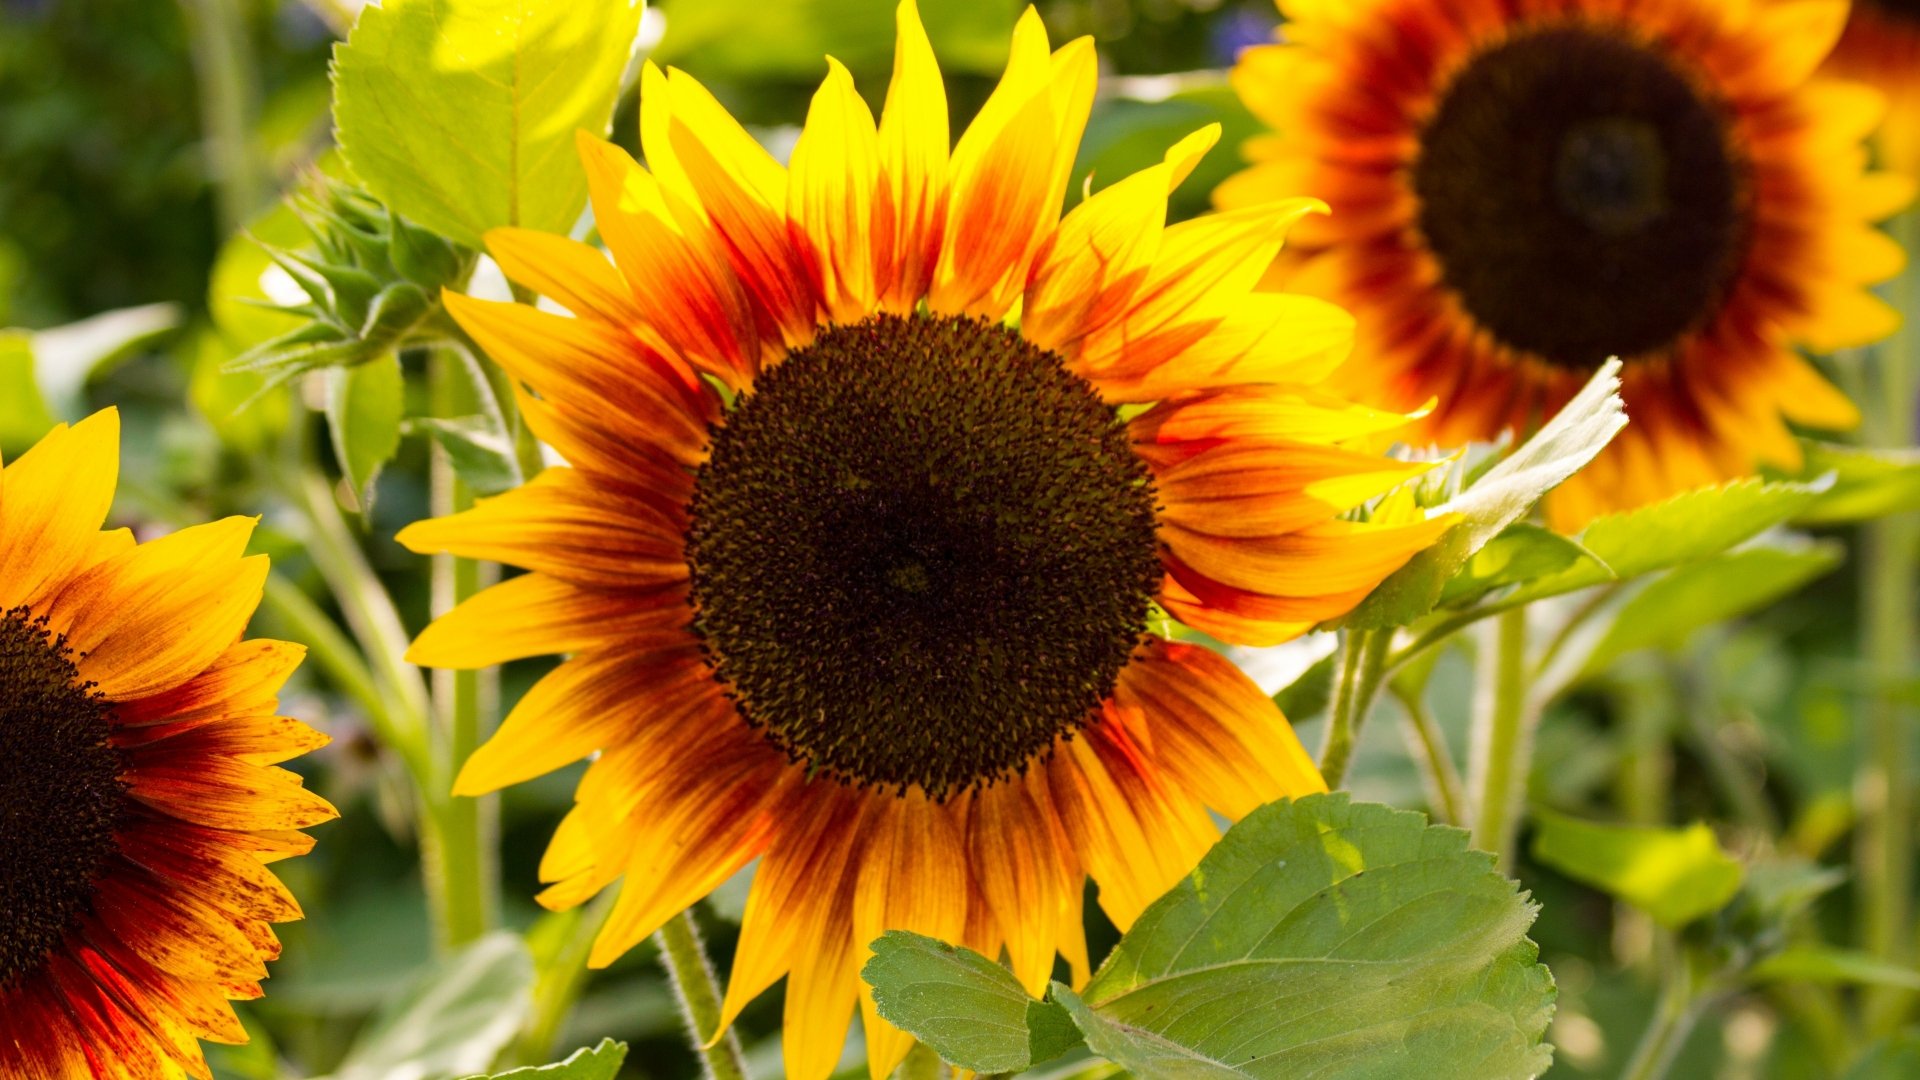 Nature Sunflower 4k Ultra HD Wallpaper